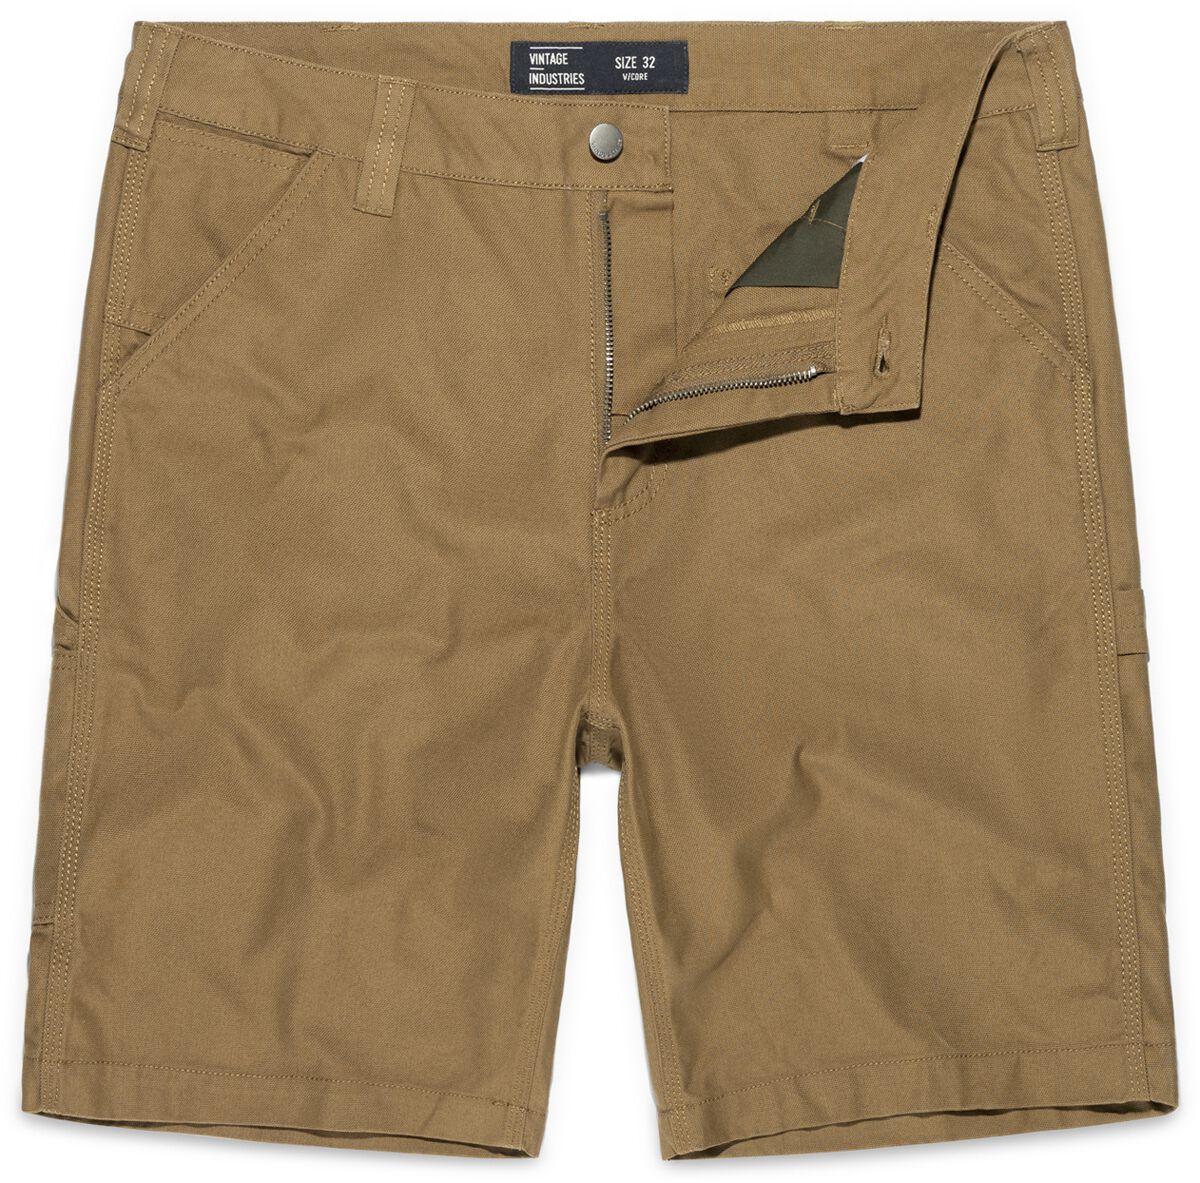 Vintage Industries Short - Dayton Shorts - 32 bis 38 - für Männer - Größe 36 - beige von Vintage Industries